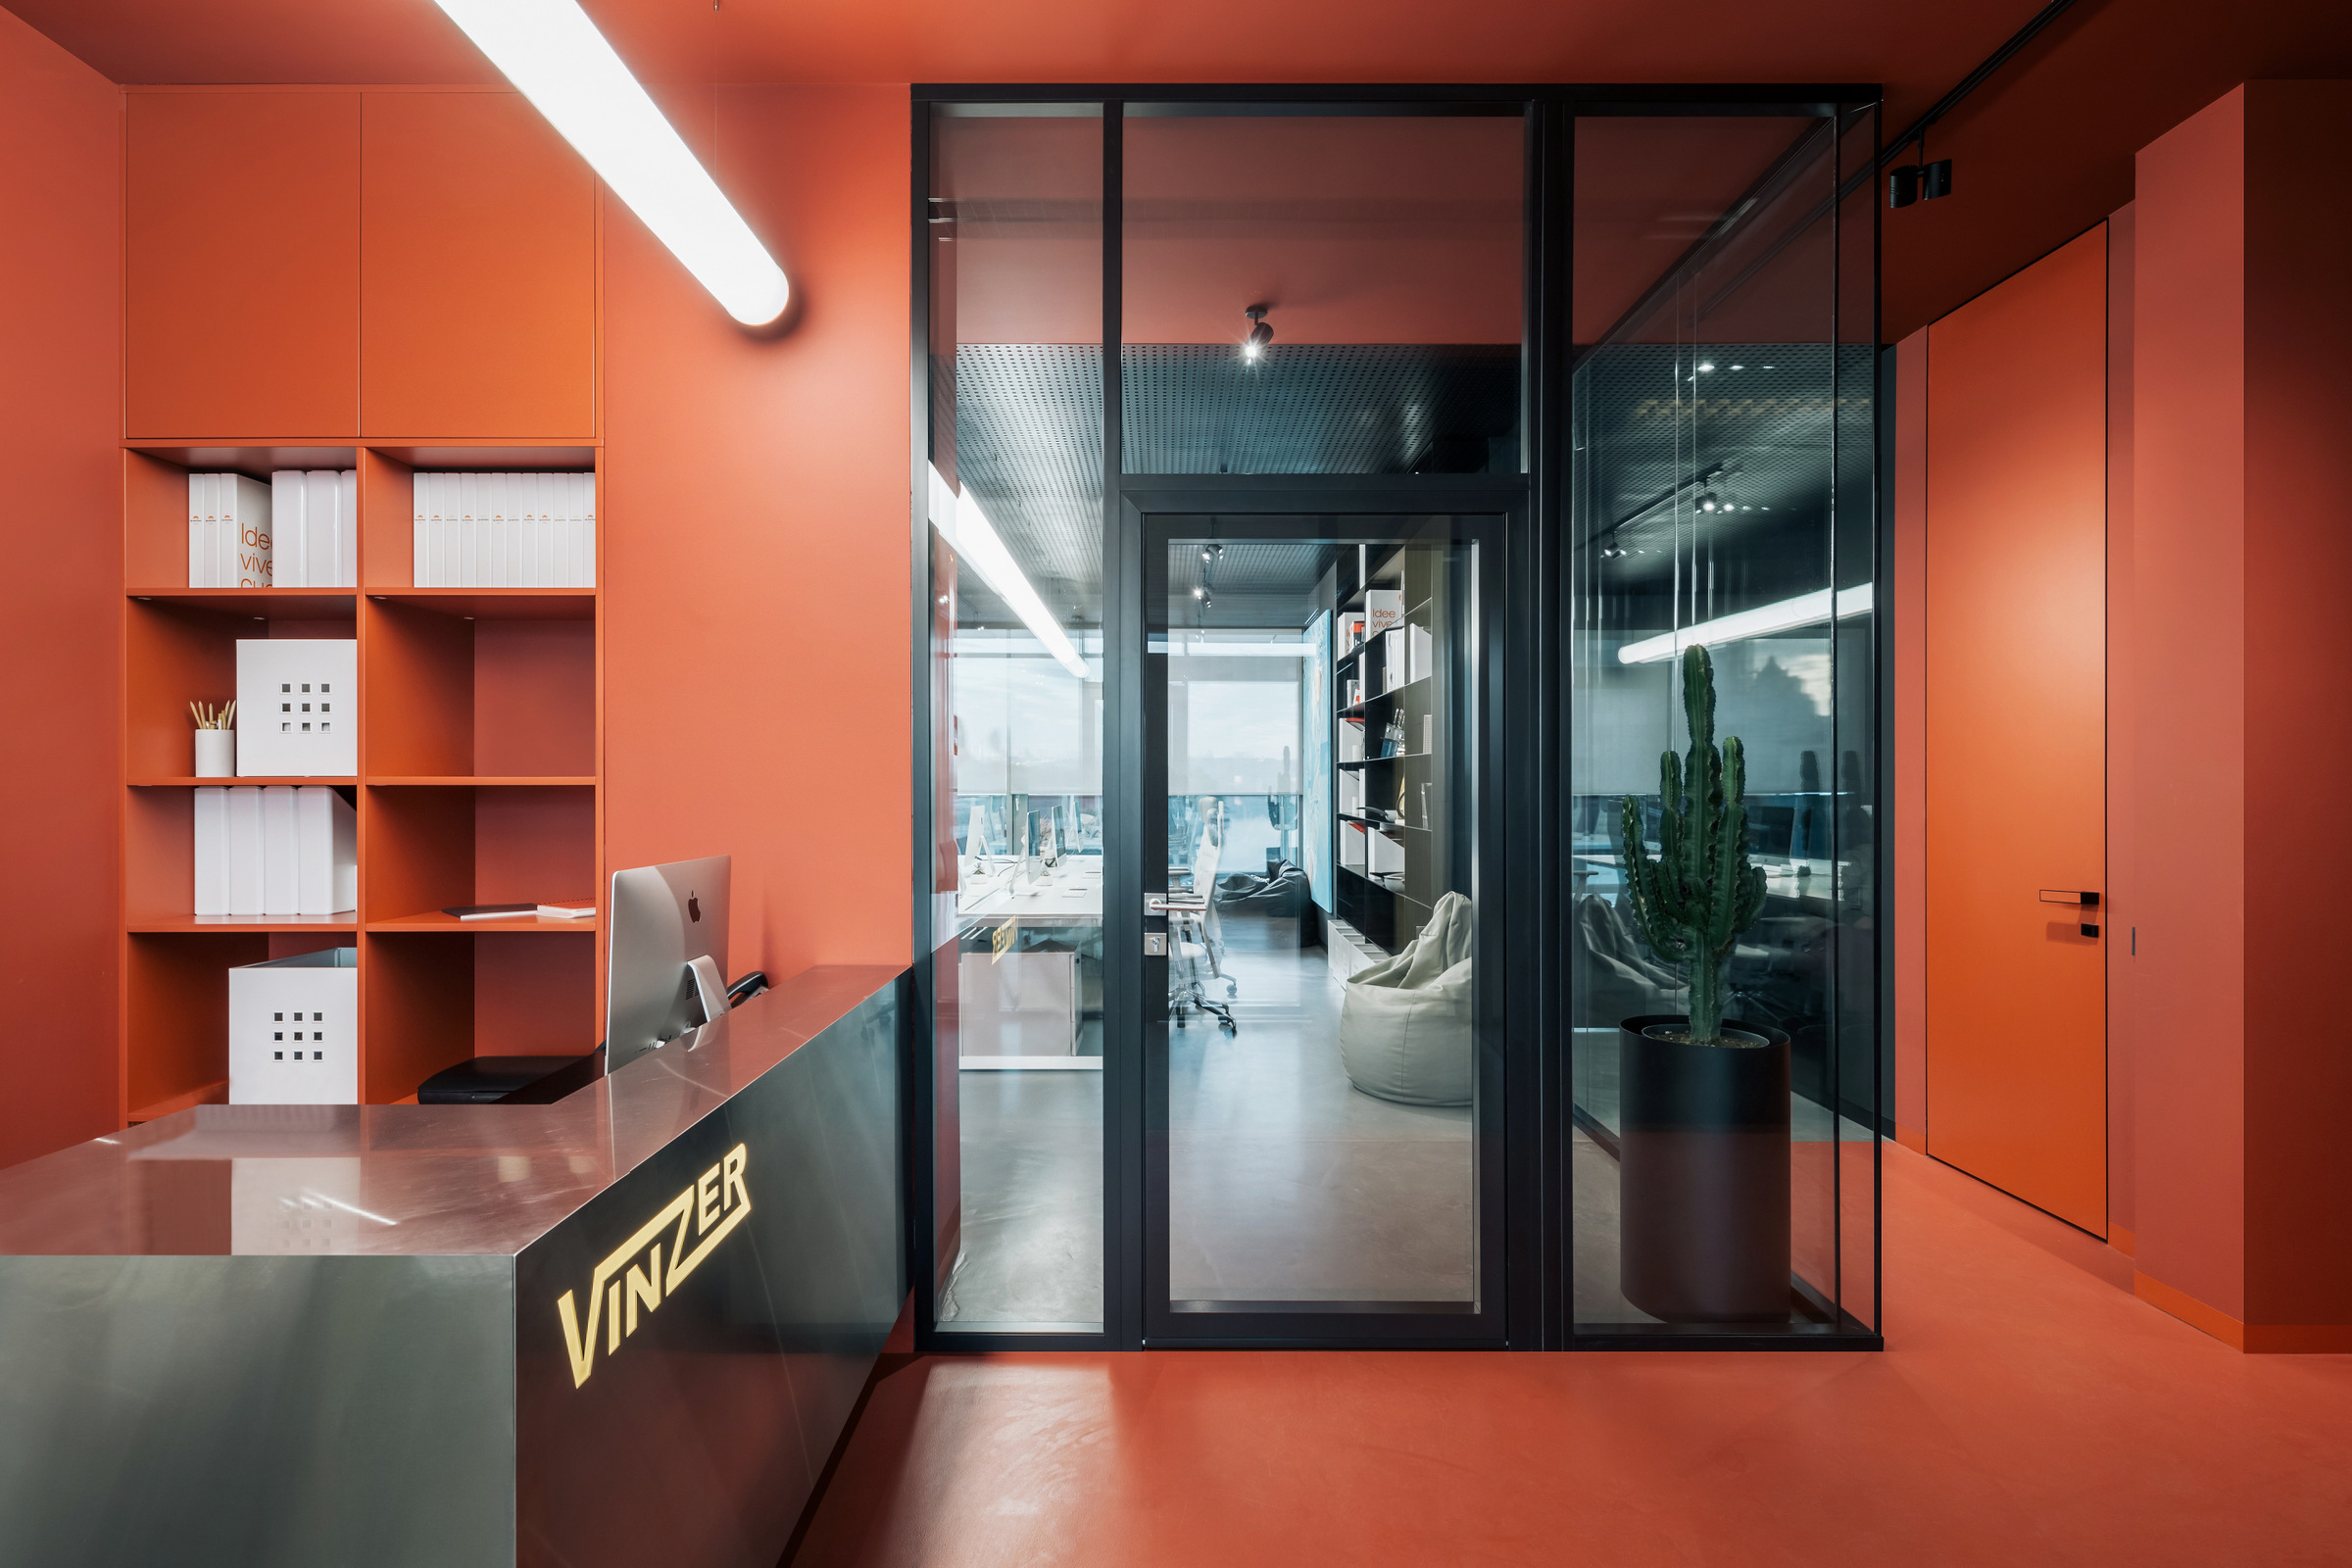 Vinzer炊具办公室-基辅|ART-Arrakis | 建筑室内设计的创新与灵感